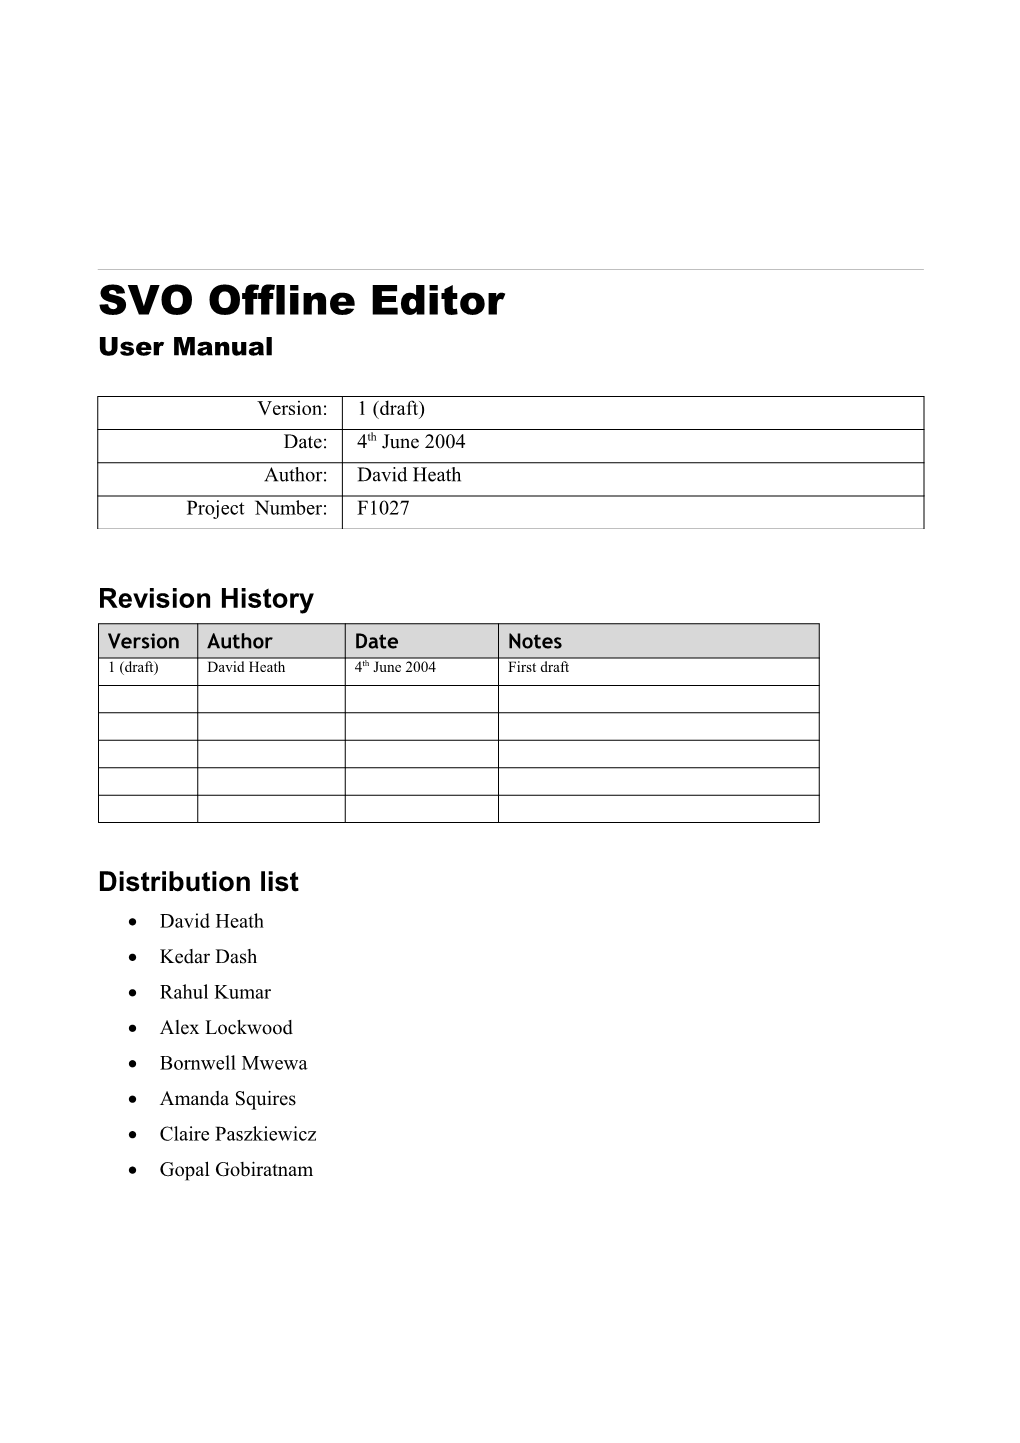 SVO Offline Editor User Manual